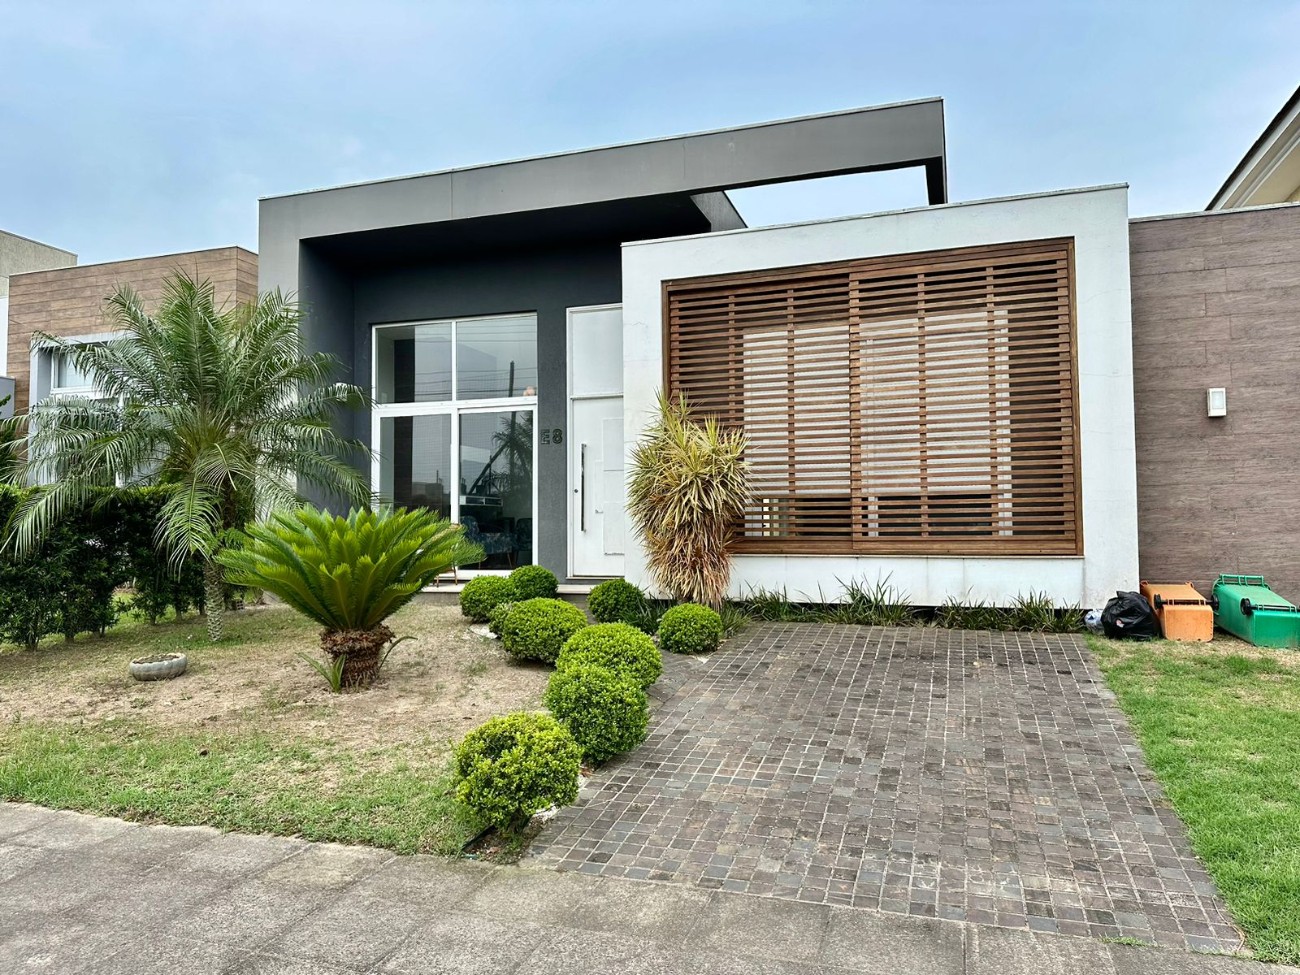 Casa em Condomínio 3 dormitórios para venda, Zona Nova em Capão da Canoa | Ref.: 496